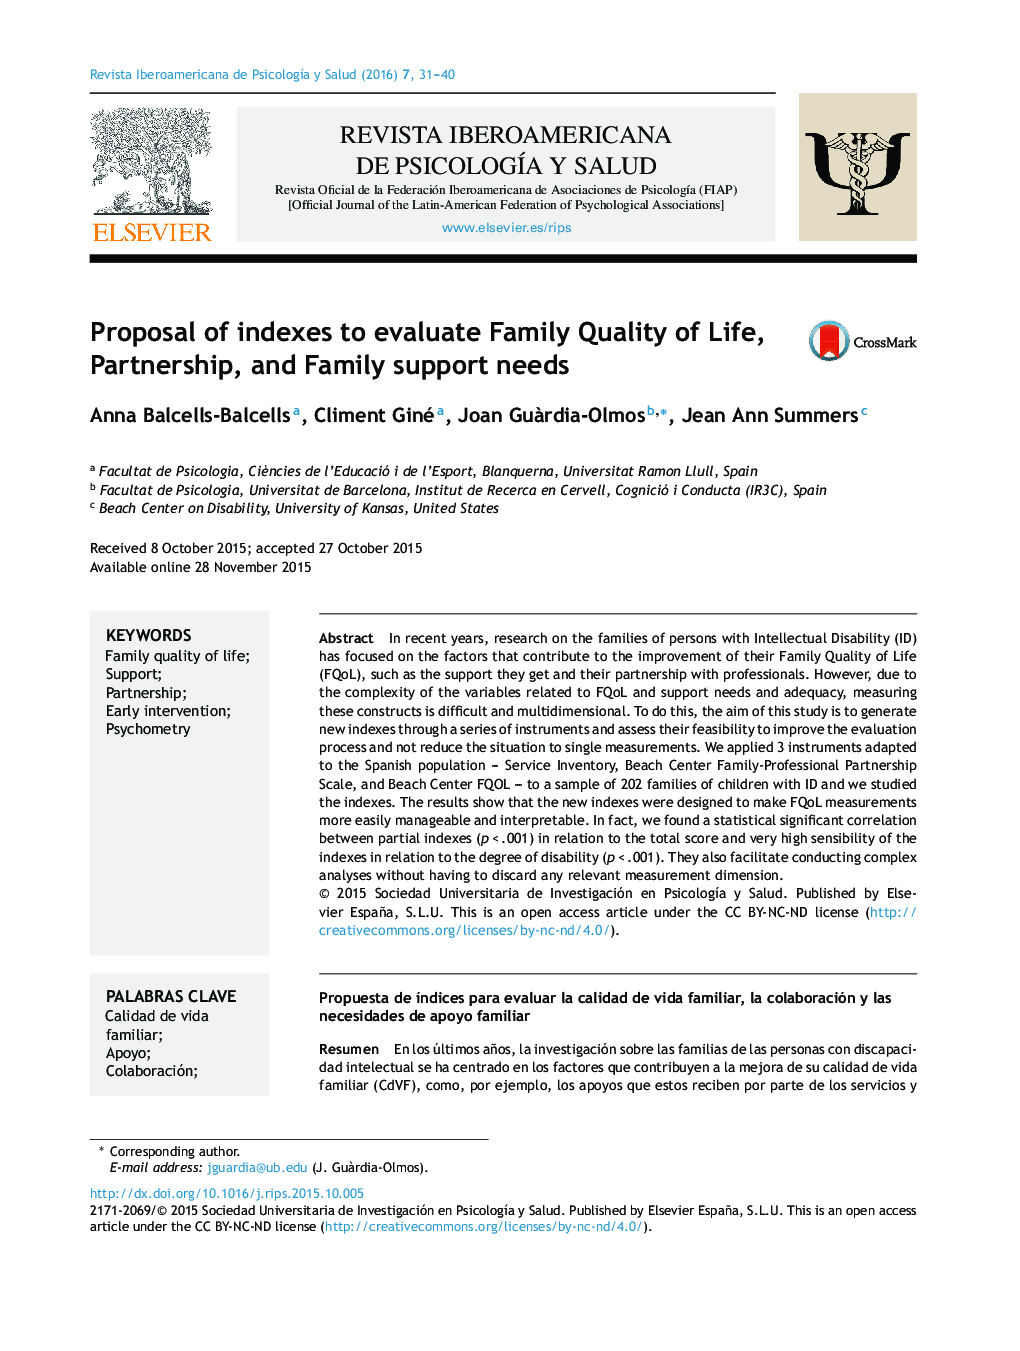 پیشنهاد شاخص برای ارزیابی کیفیت زندگی خانواده، مشارکت و نیازهای پشتیبانی خانواده